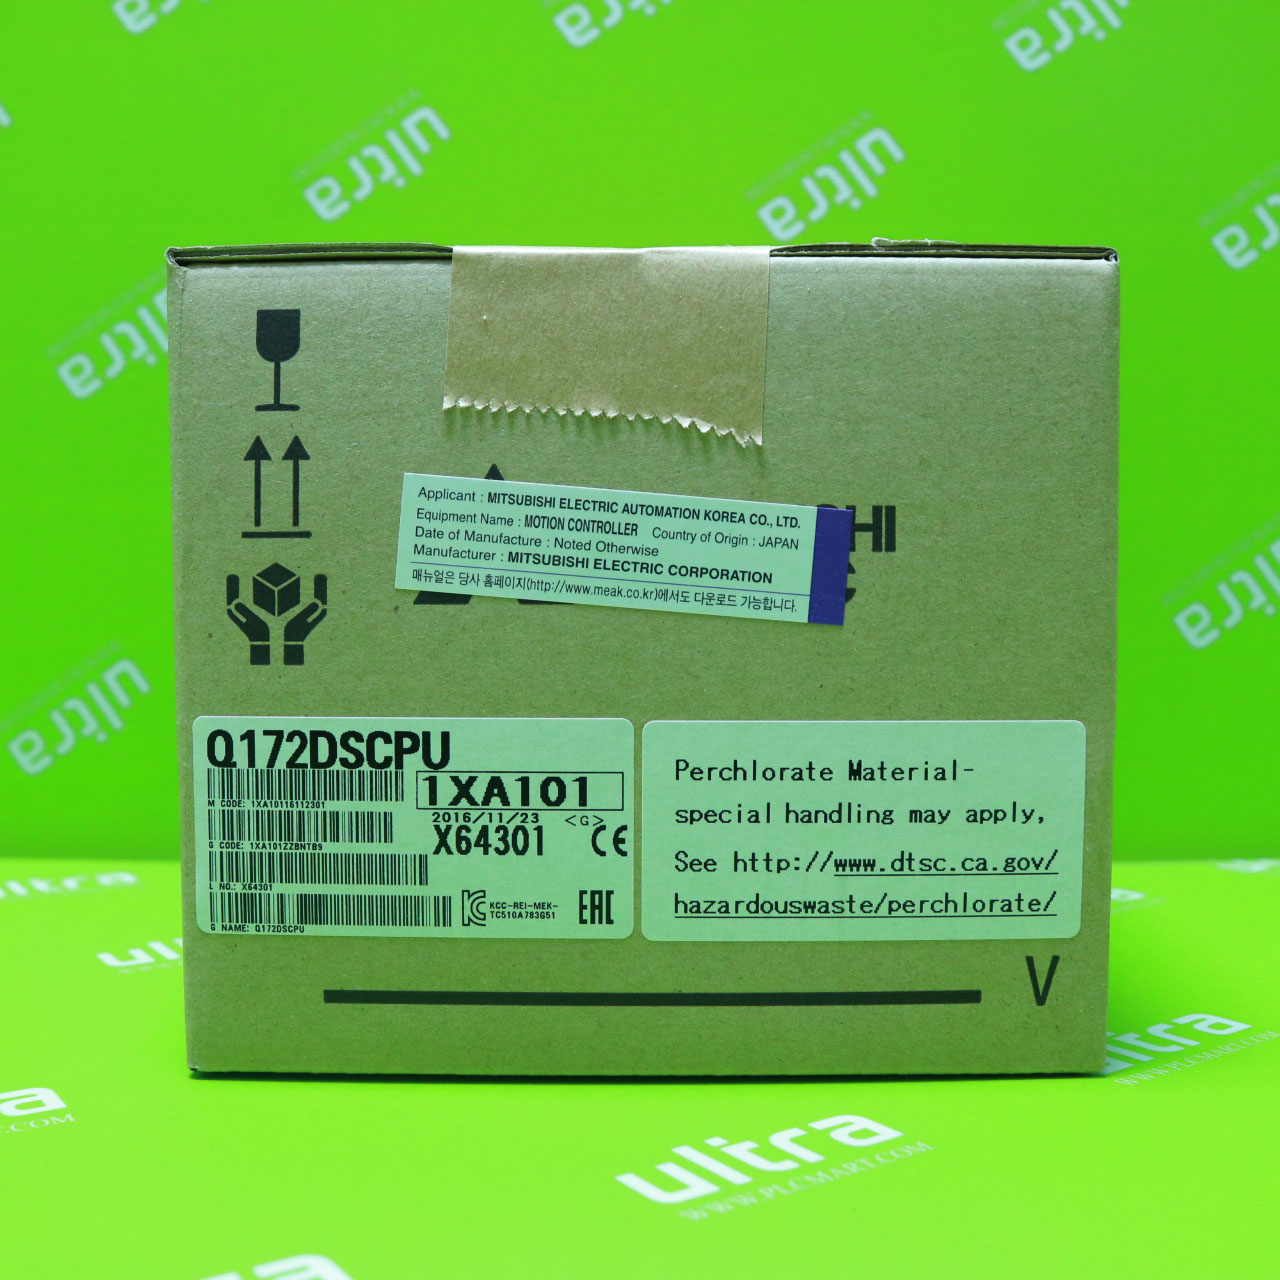 [신품] Q172DSCPU 미쯔비시 모션컨트롤러 시피유 PLC